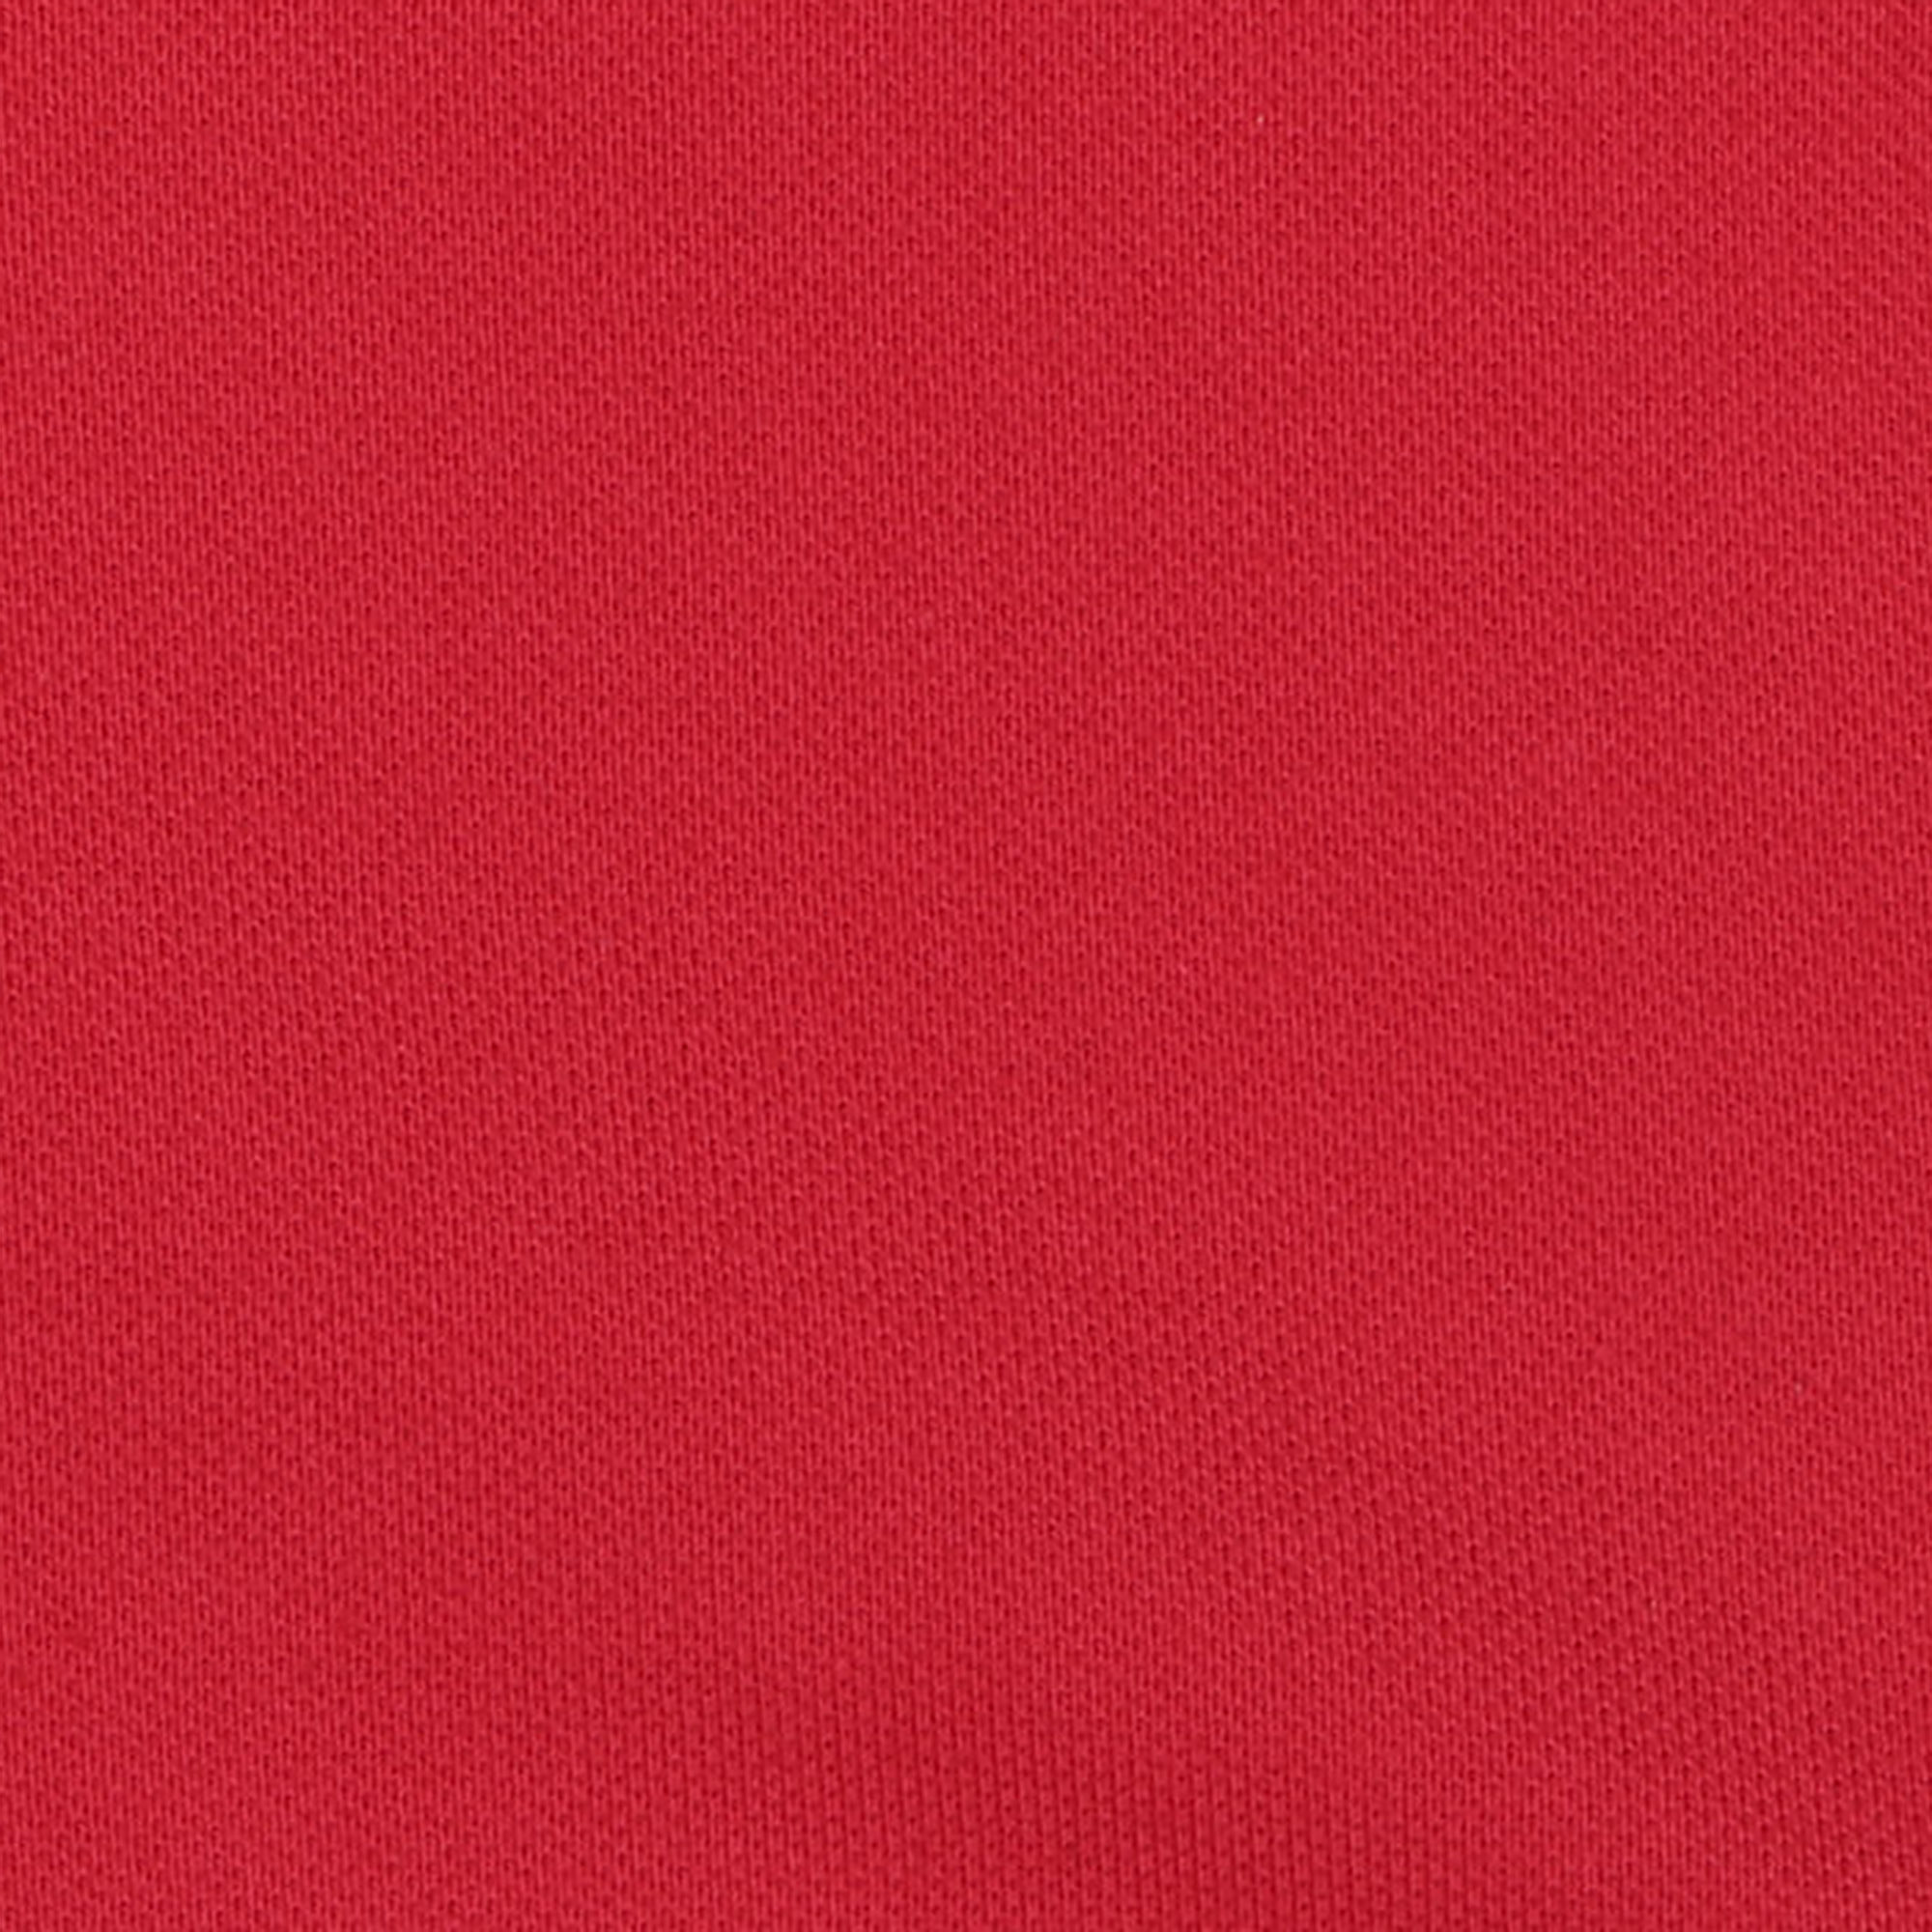 Женское поло AMADEY с коротким рукавом  XXL красное, цвет красный, размер XXL - фото 5